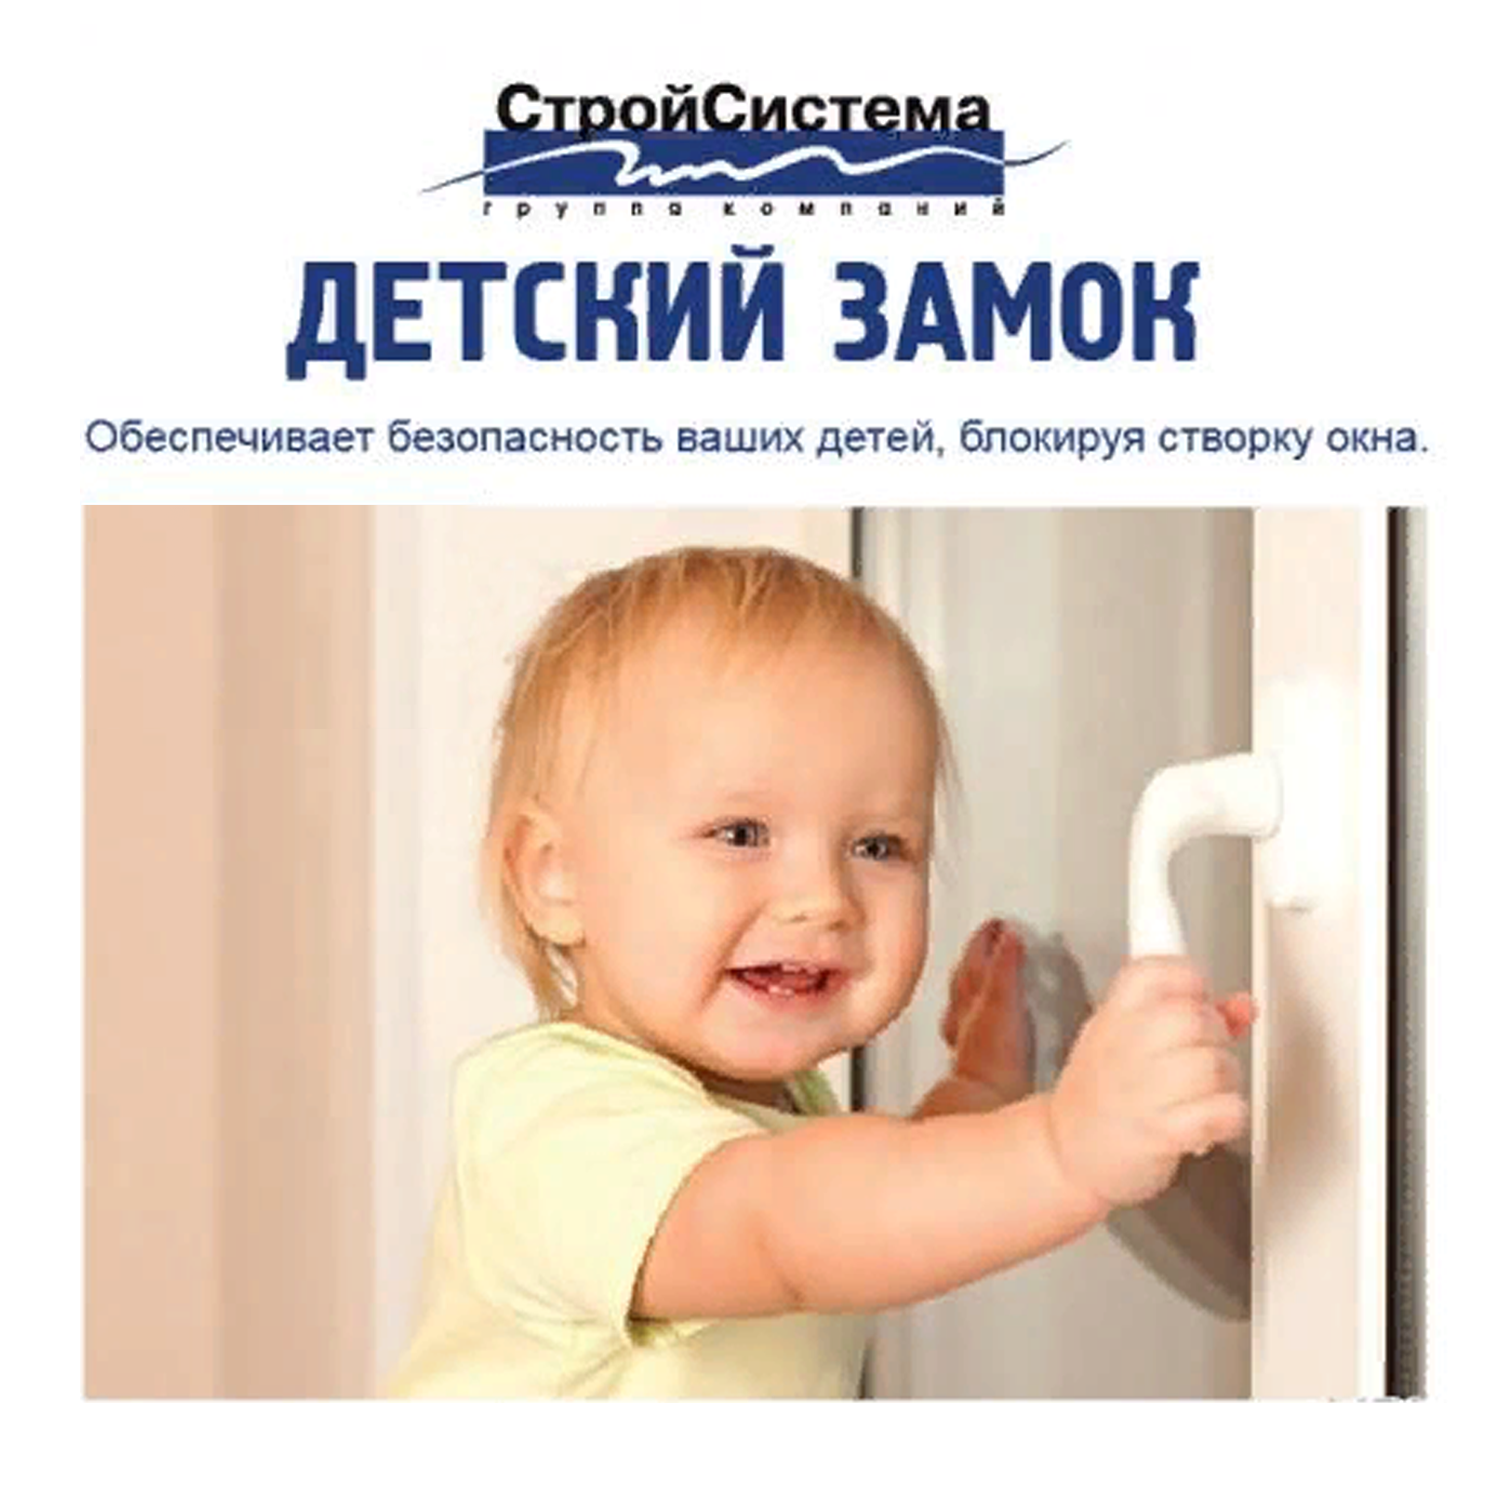 Детская защита окна реклама